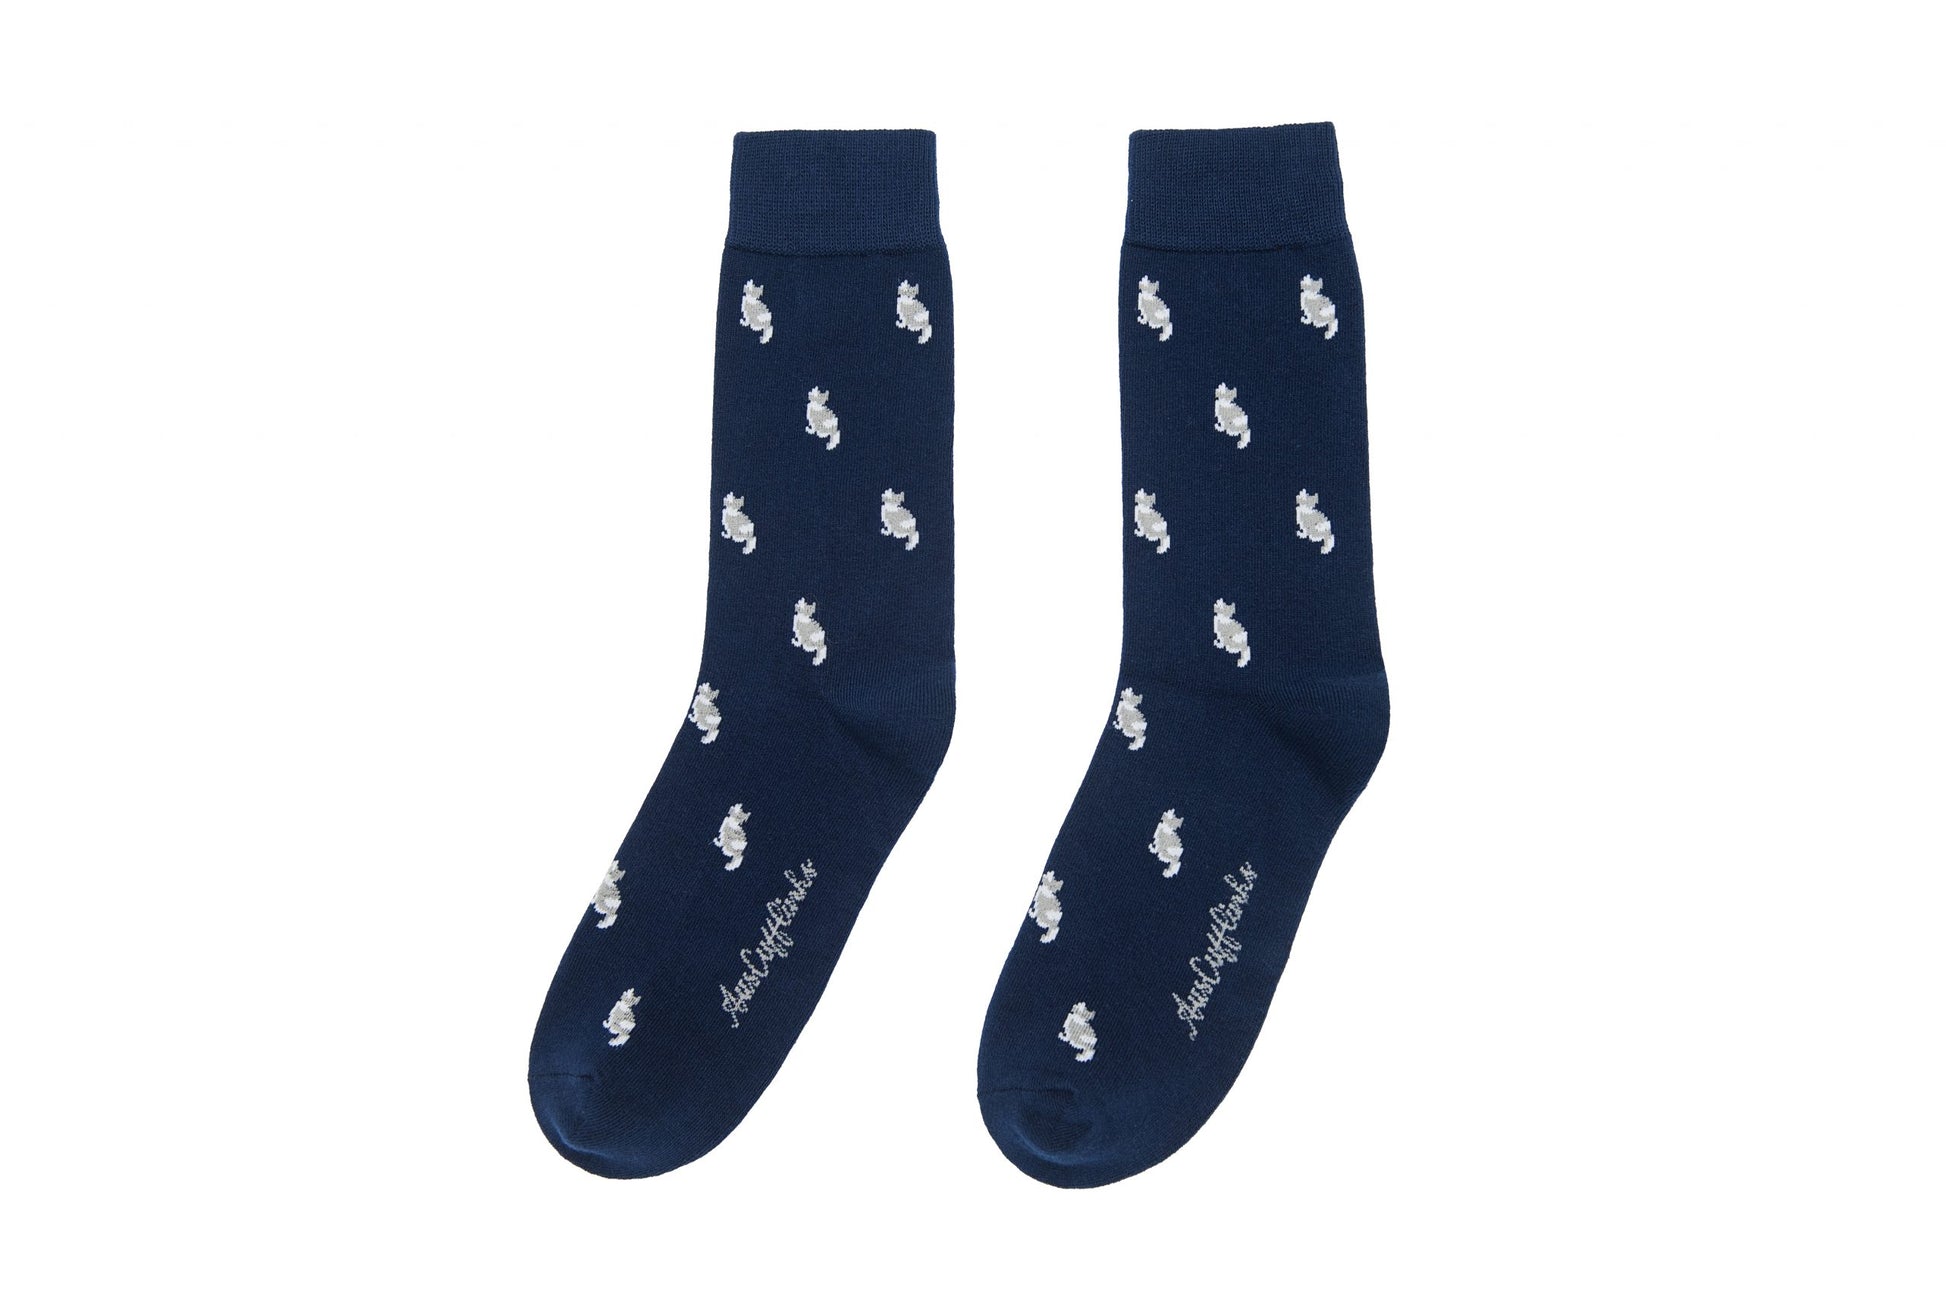 A pair of Cat Socks.